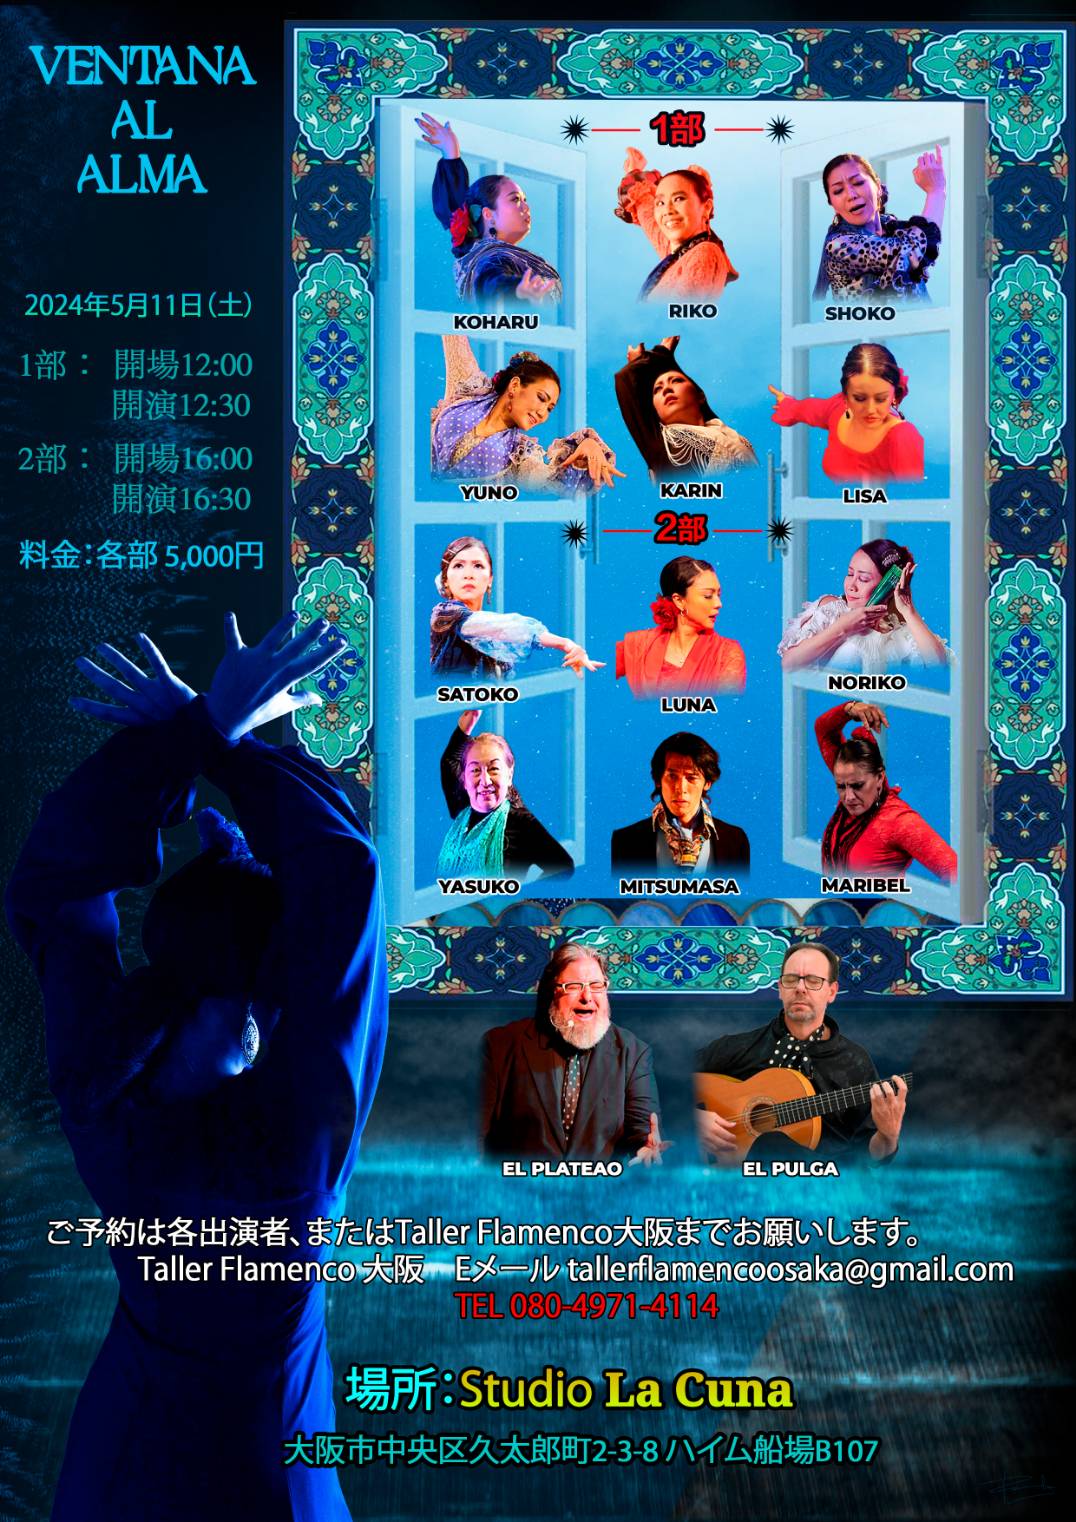 【出演】2024年5月11日(土)Flamenco Live VENTANA AL ALMAに出演いたします。